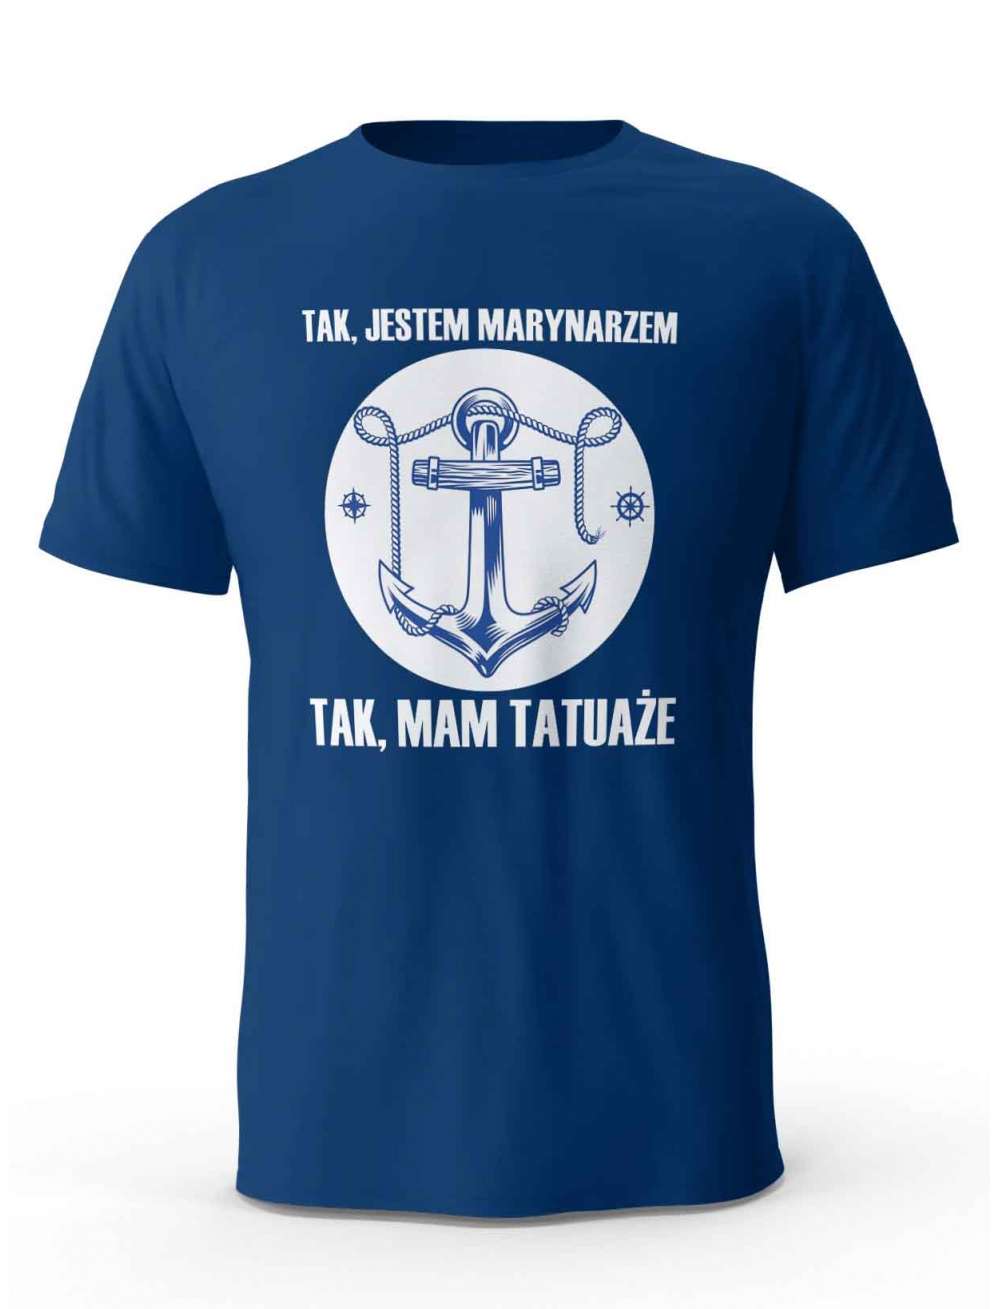 Koszulka Tak, Jestem Marynarzem, T-shirt Dla Mężczyzny